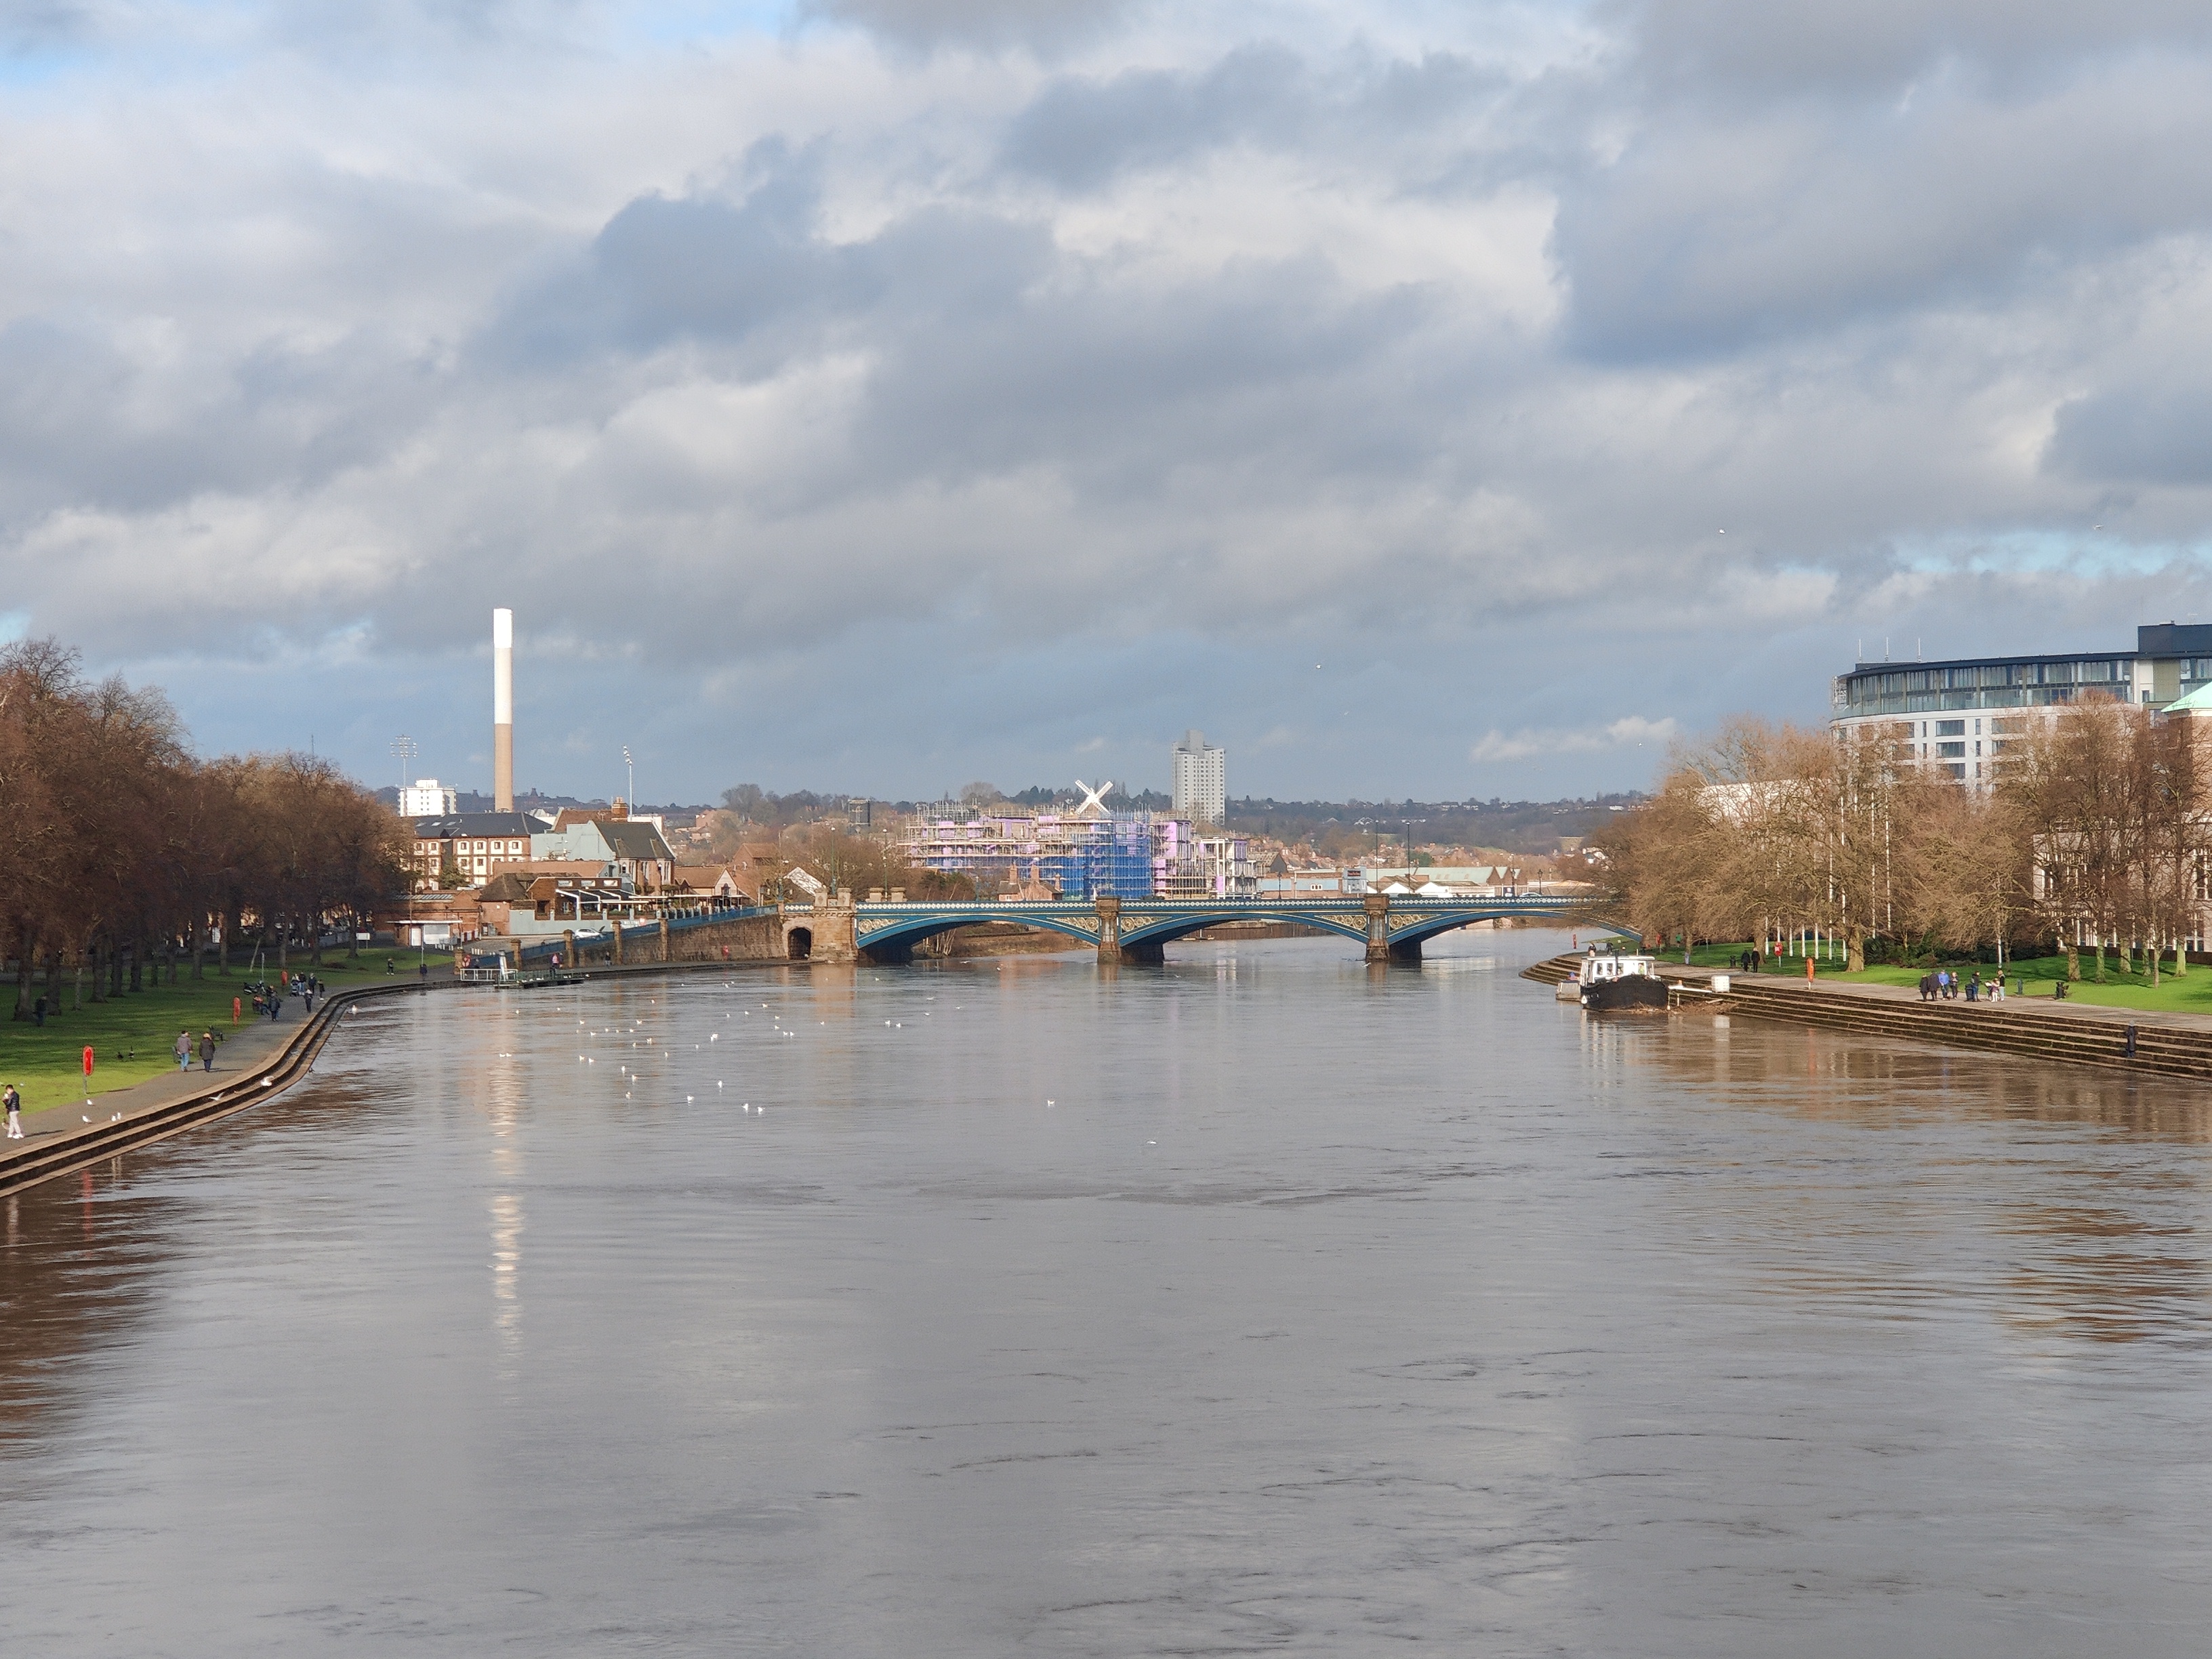 River Trent in Nottingham